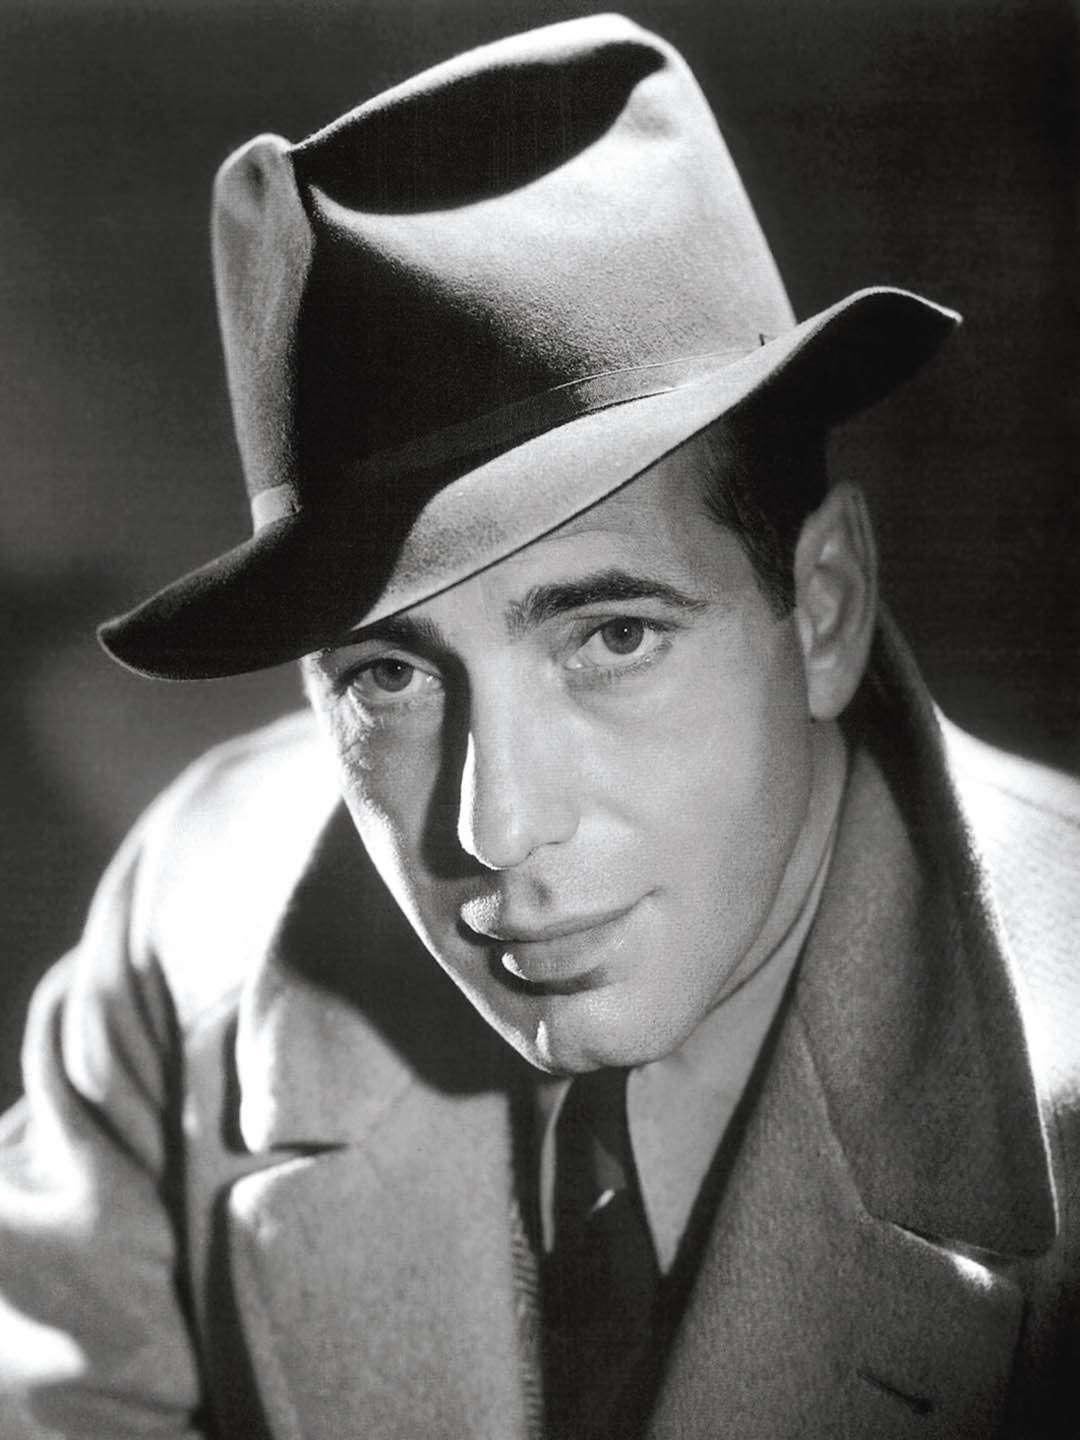 How tall is Humphrey Bogart?